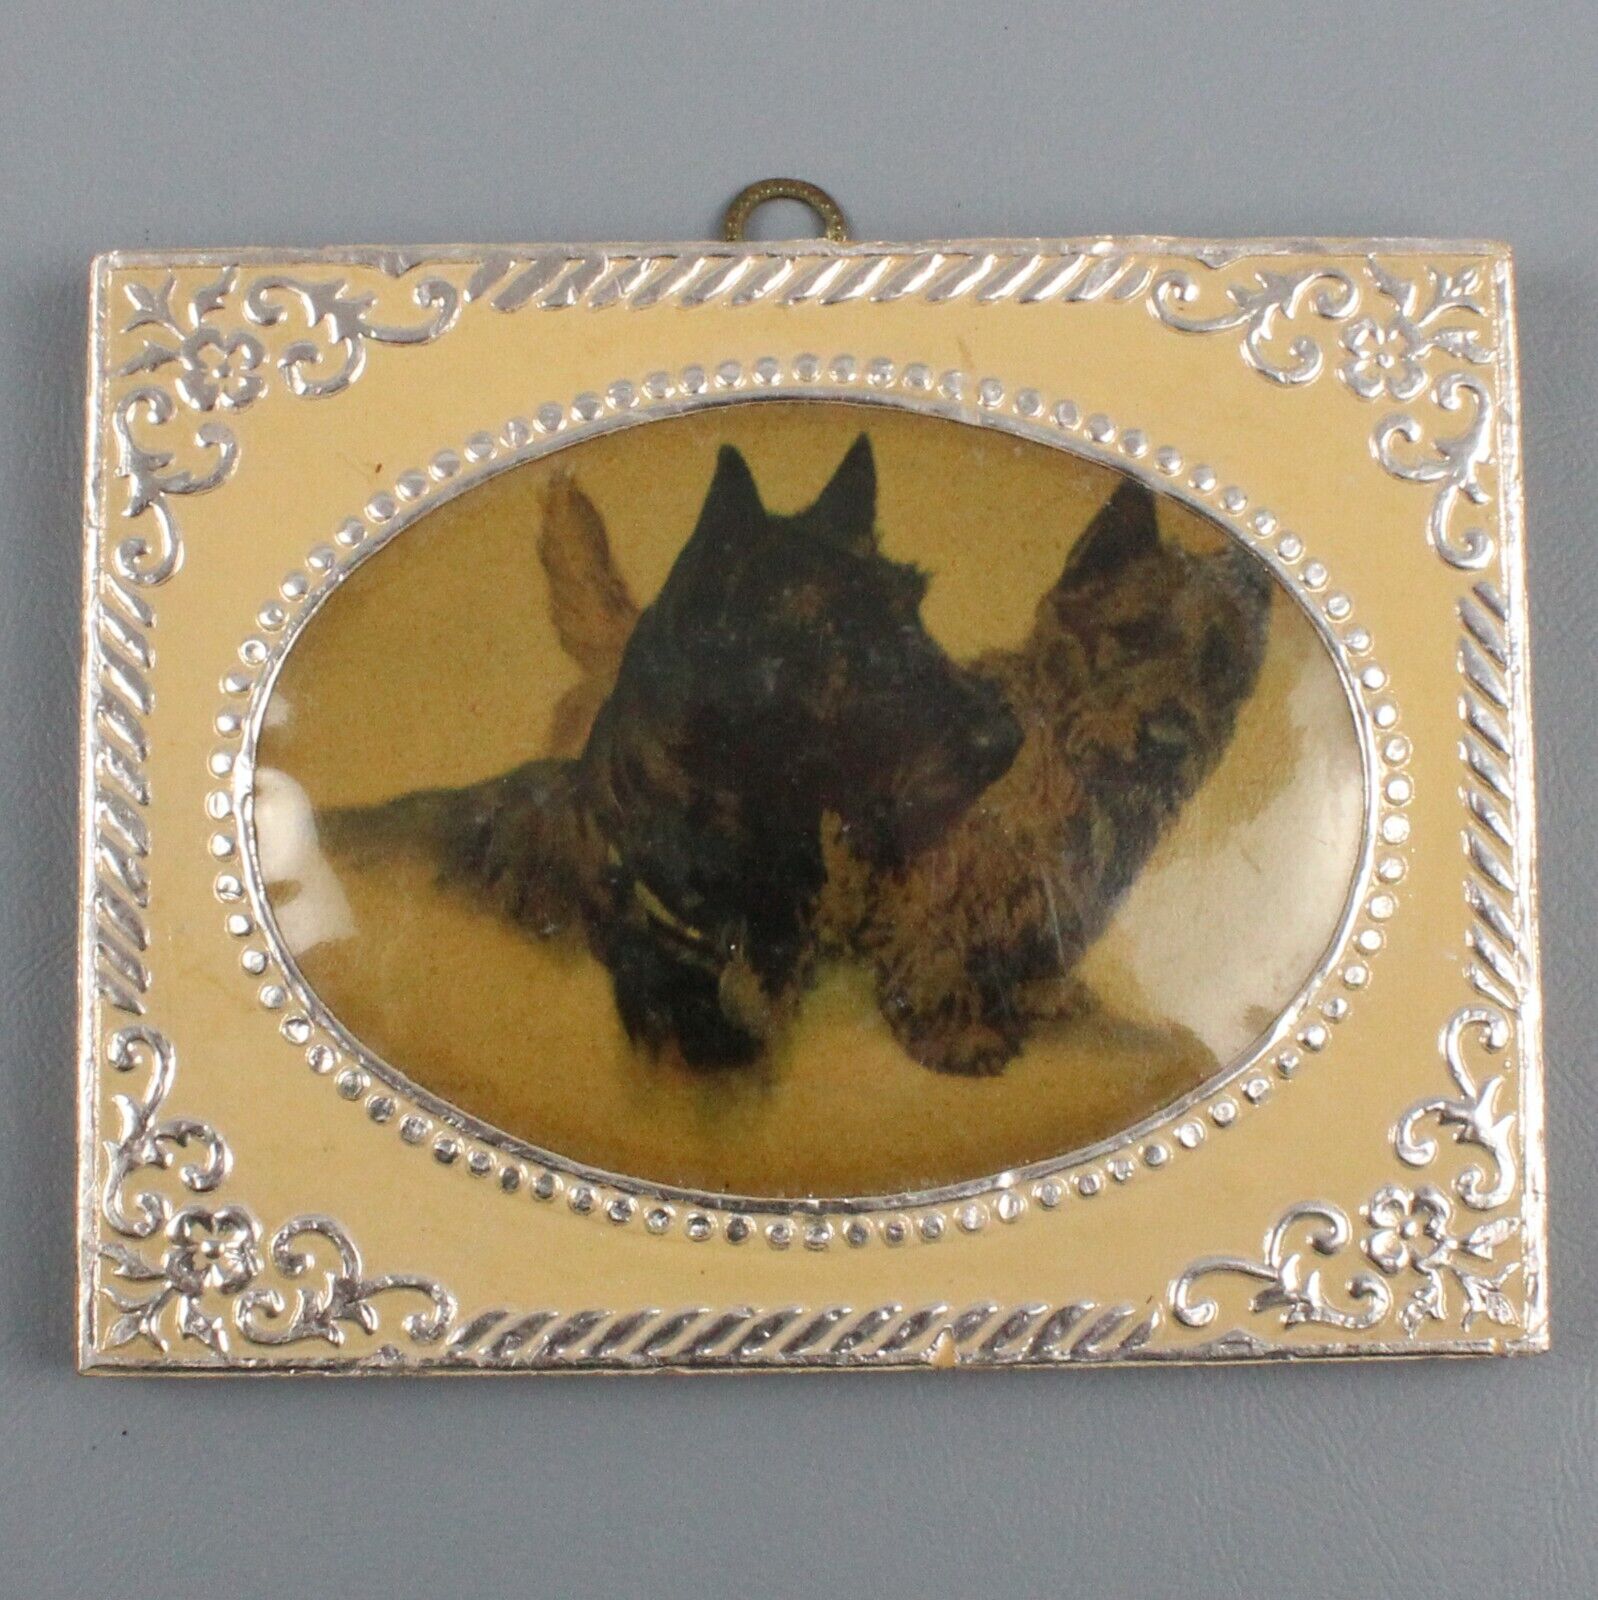 Scottish Terrier Framed Print By Vernon Stokes Foil embossed Domed cover Vintage